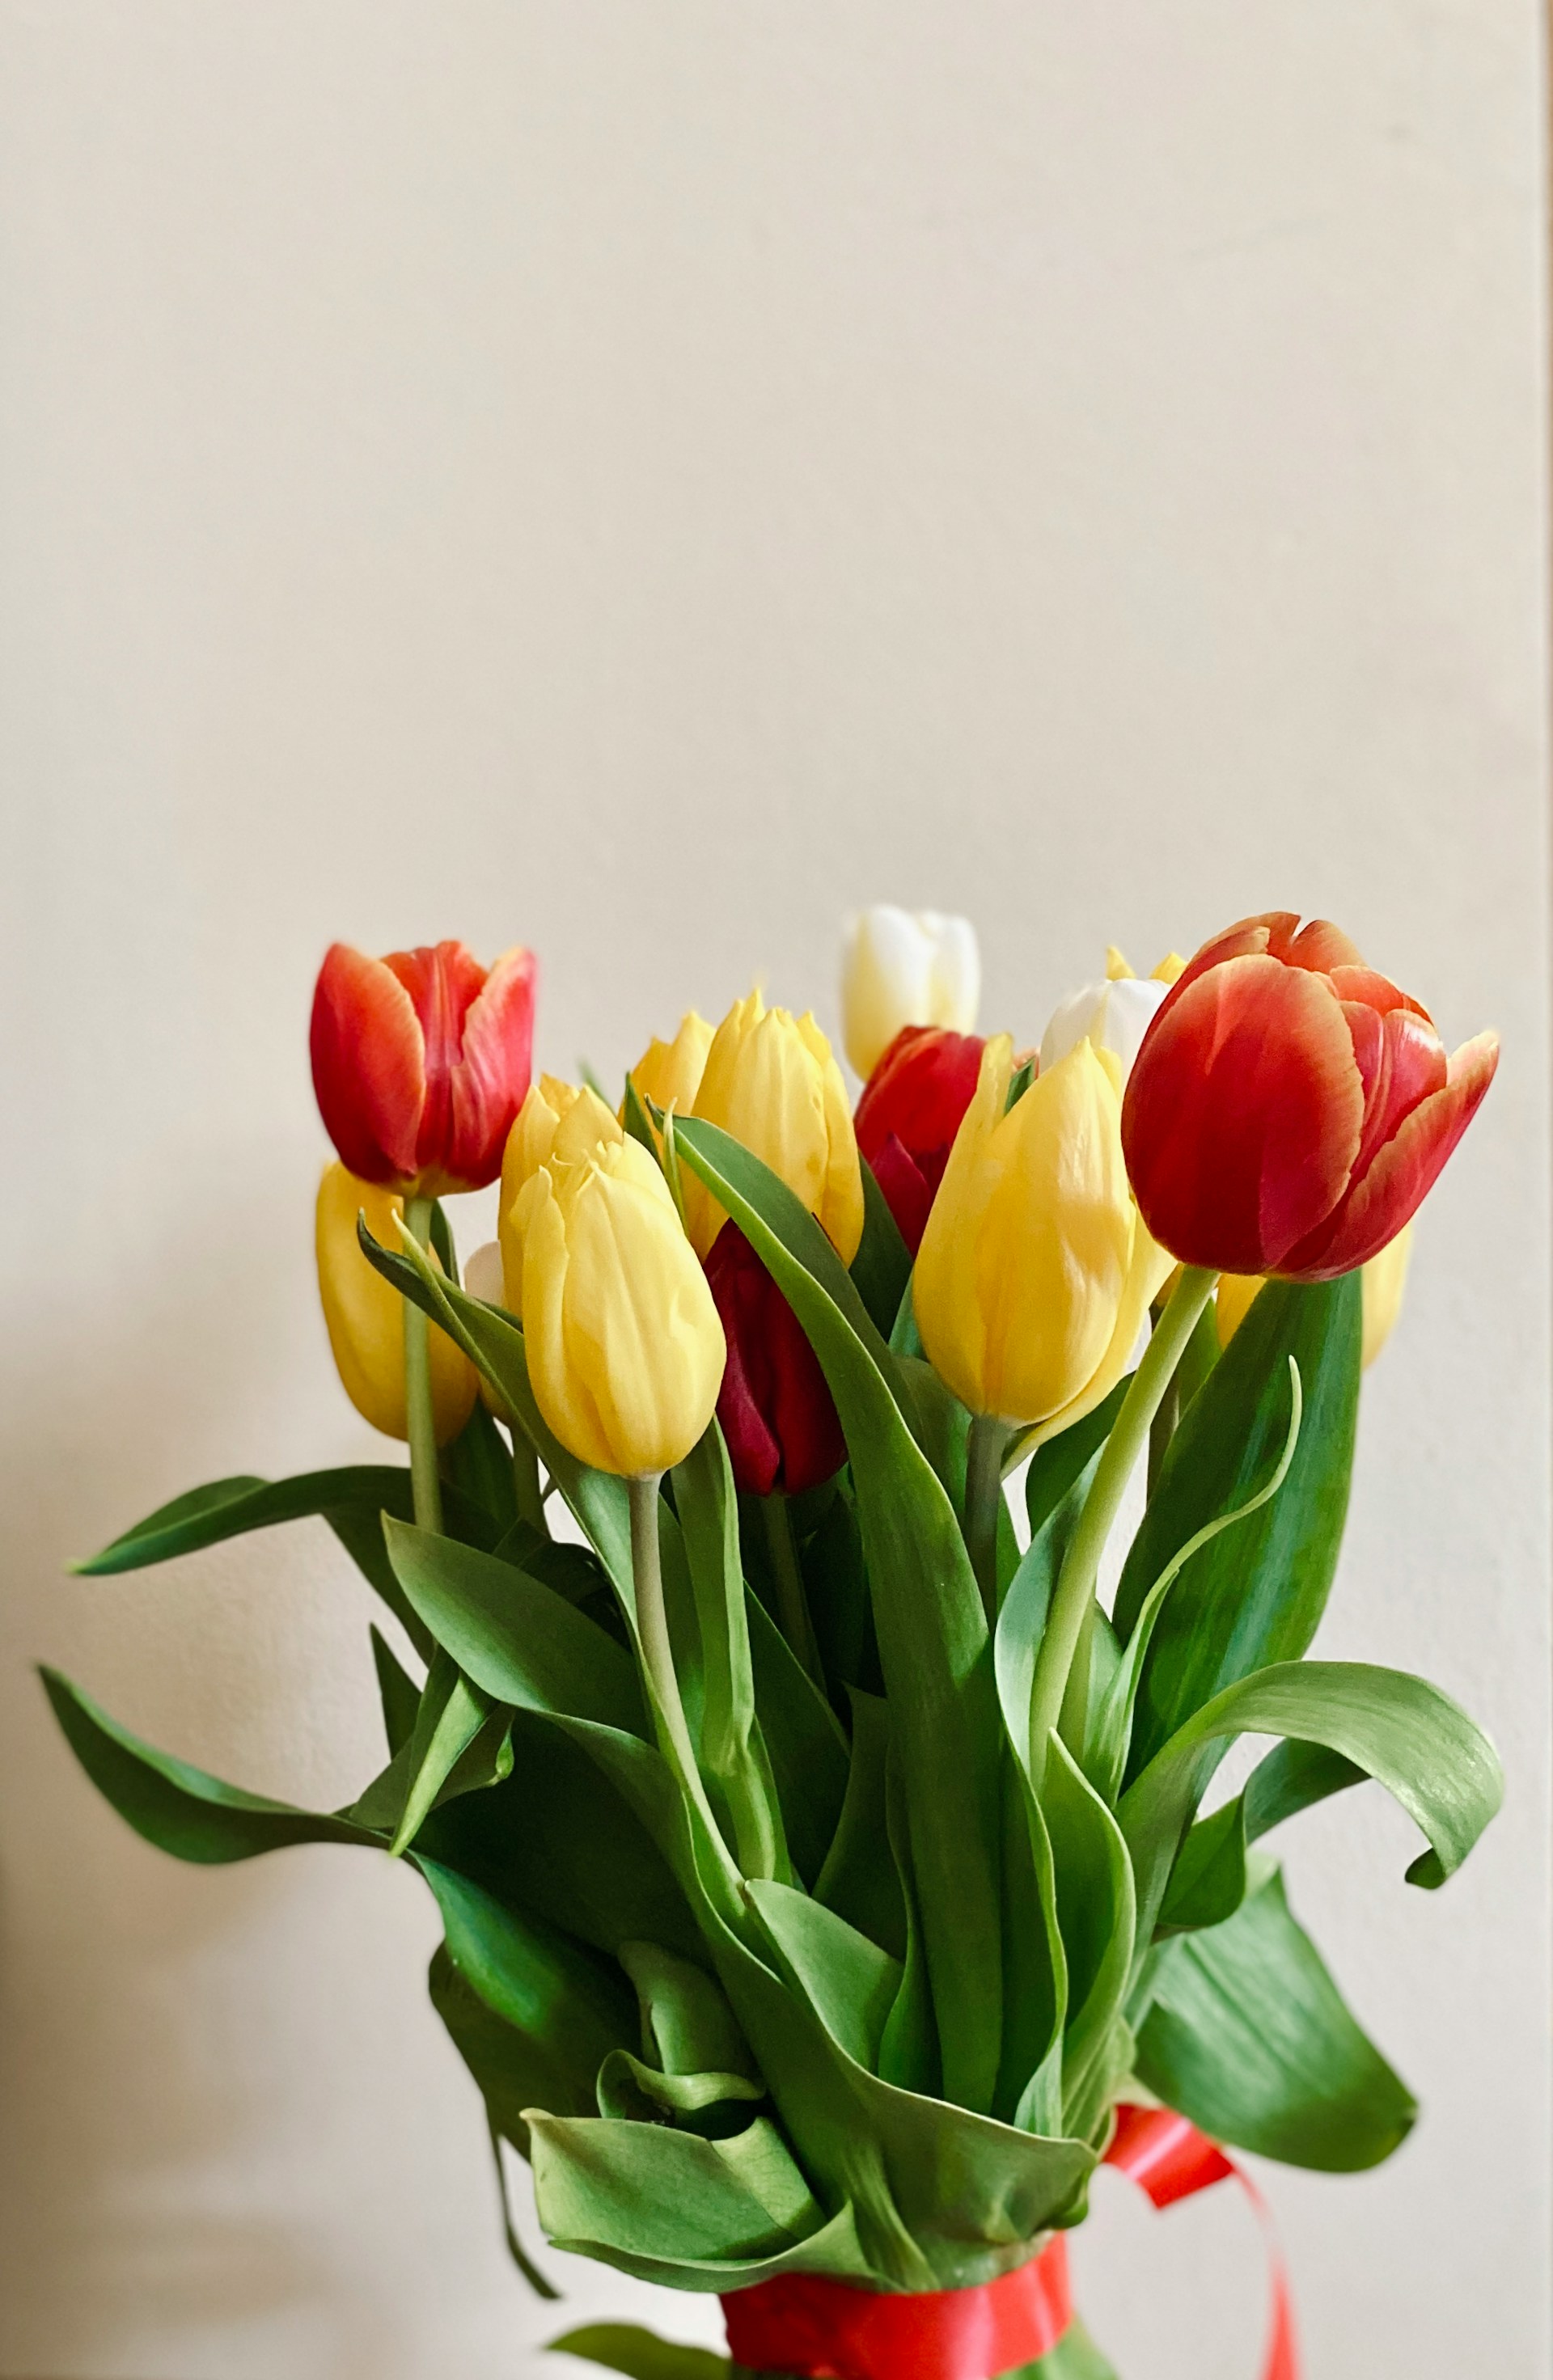 Ein Blumenstrauß aus Tulpen | Quelle: Unsplash